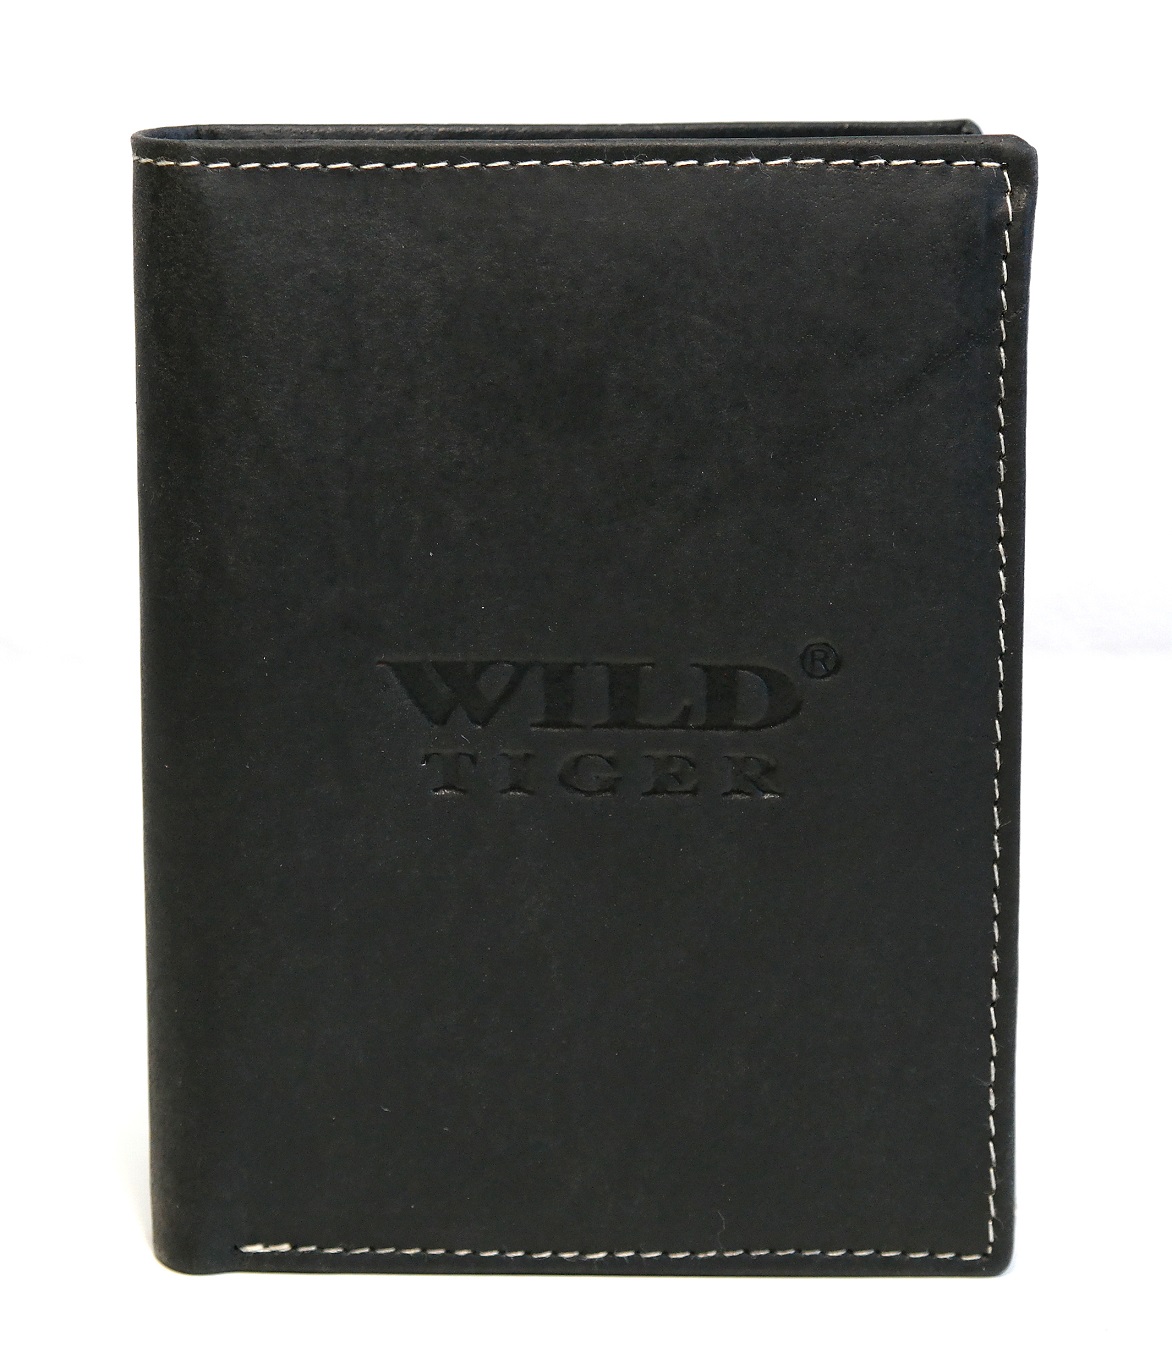 Černá pánská kožená peněženka Wild Tiger (AM-28-123) na výšku